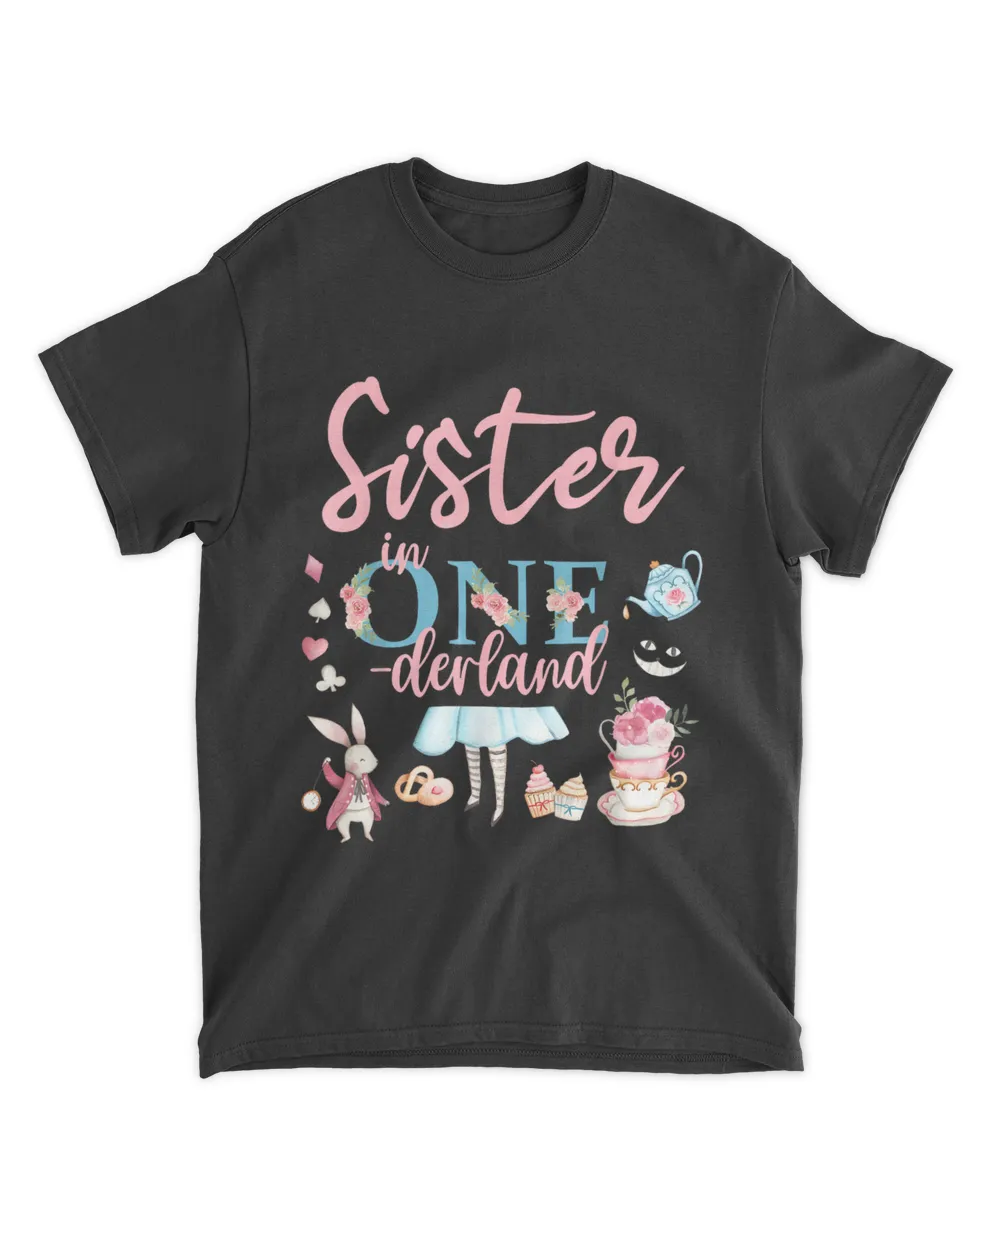 Sister Of The Birthday Girl - Sister In Onderland